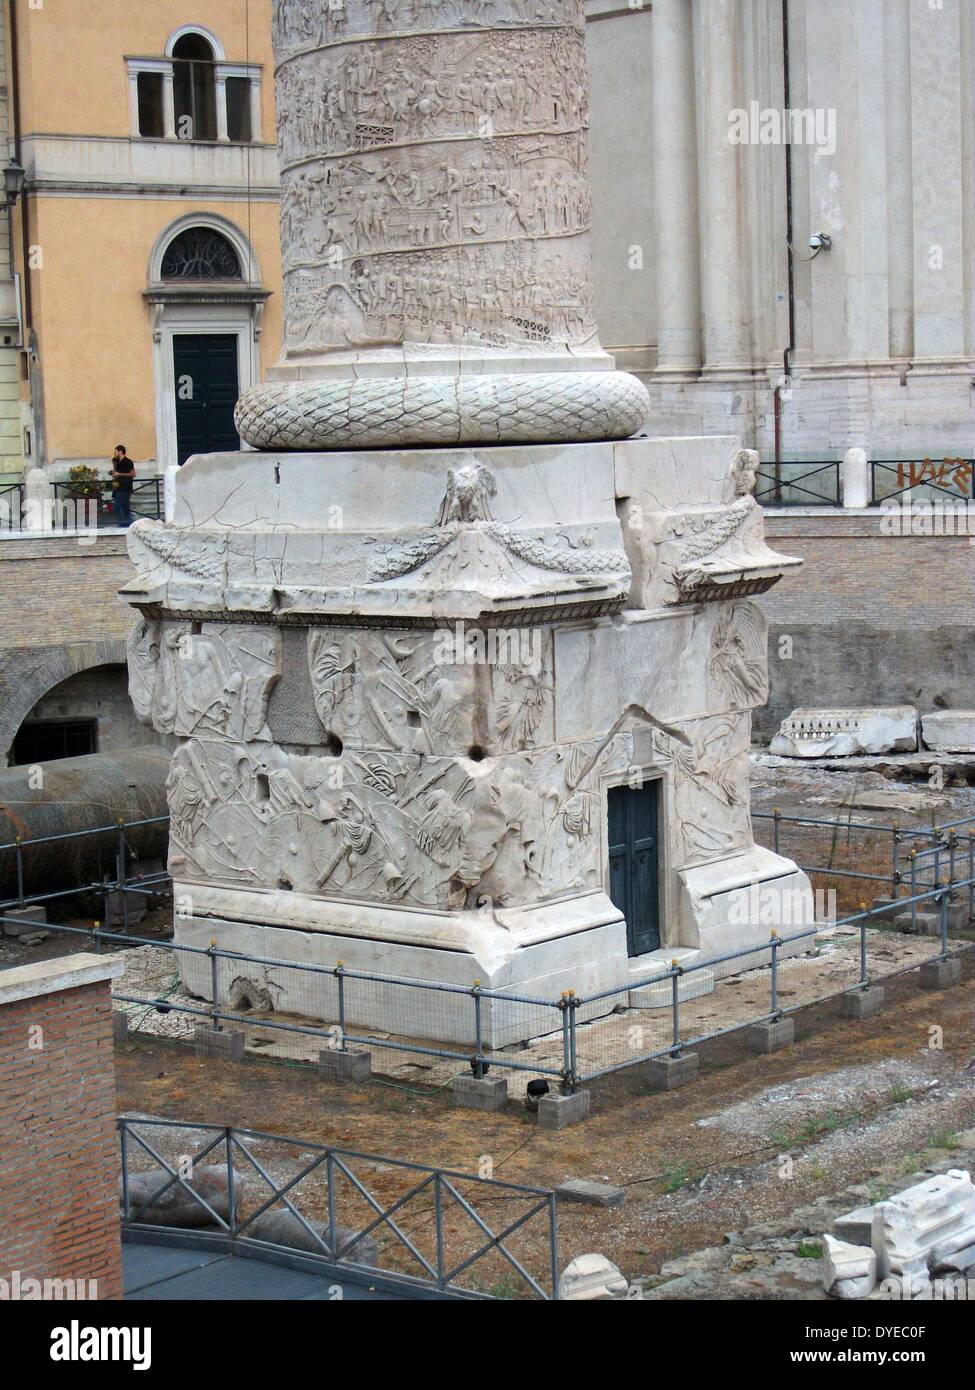 Trajan's Column ist eine römische Säule zum Gedenken an den Sieg des römischen Kaisers Trajan in der Dakischen Kriege. In das Forum Romanum, nördlich des Forum Romanum entfernt. Die Spirale Flachrelief beschreibt künstlerisch die epischen Schlachten zwischen Römern und Daker. In 113 AD abgeschlossen. Rom. Italien 2013 Stockfoto